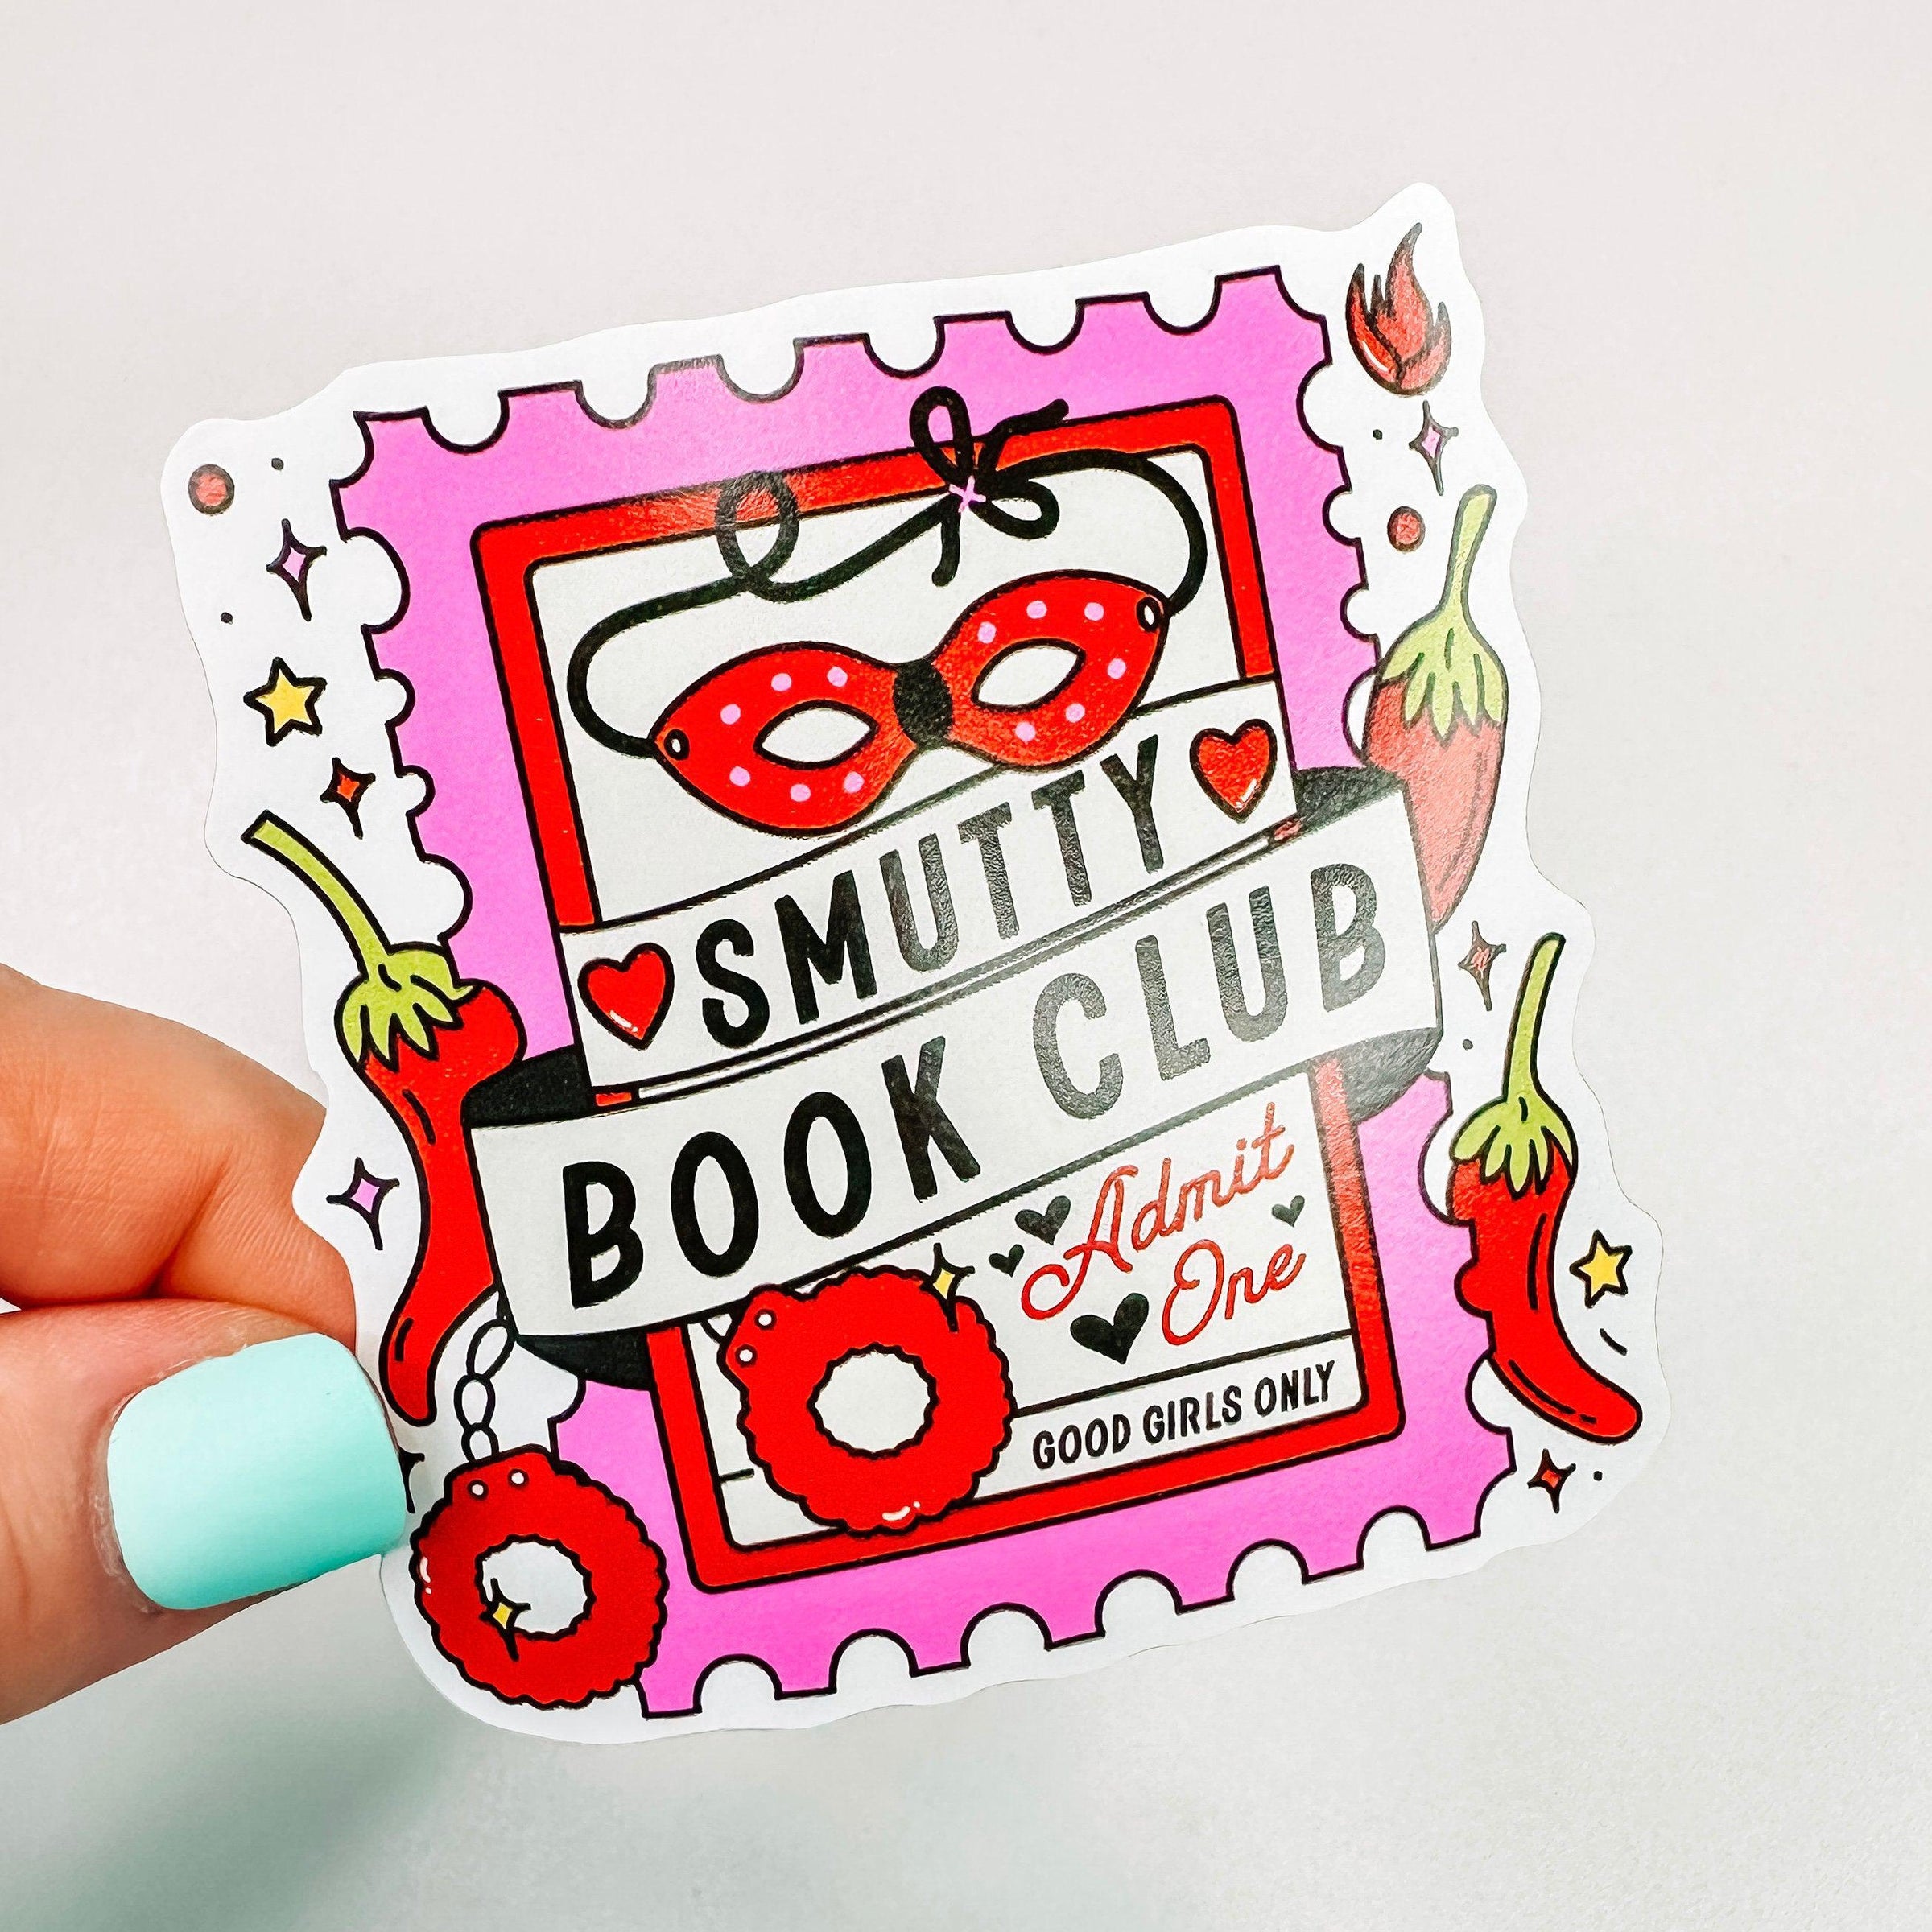 Smutty Book Club Ticket - Bookish Vinyl Sticker – Cricket Paper Co.